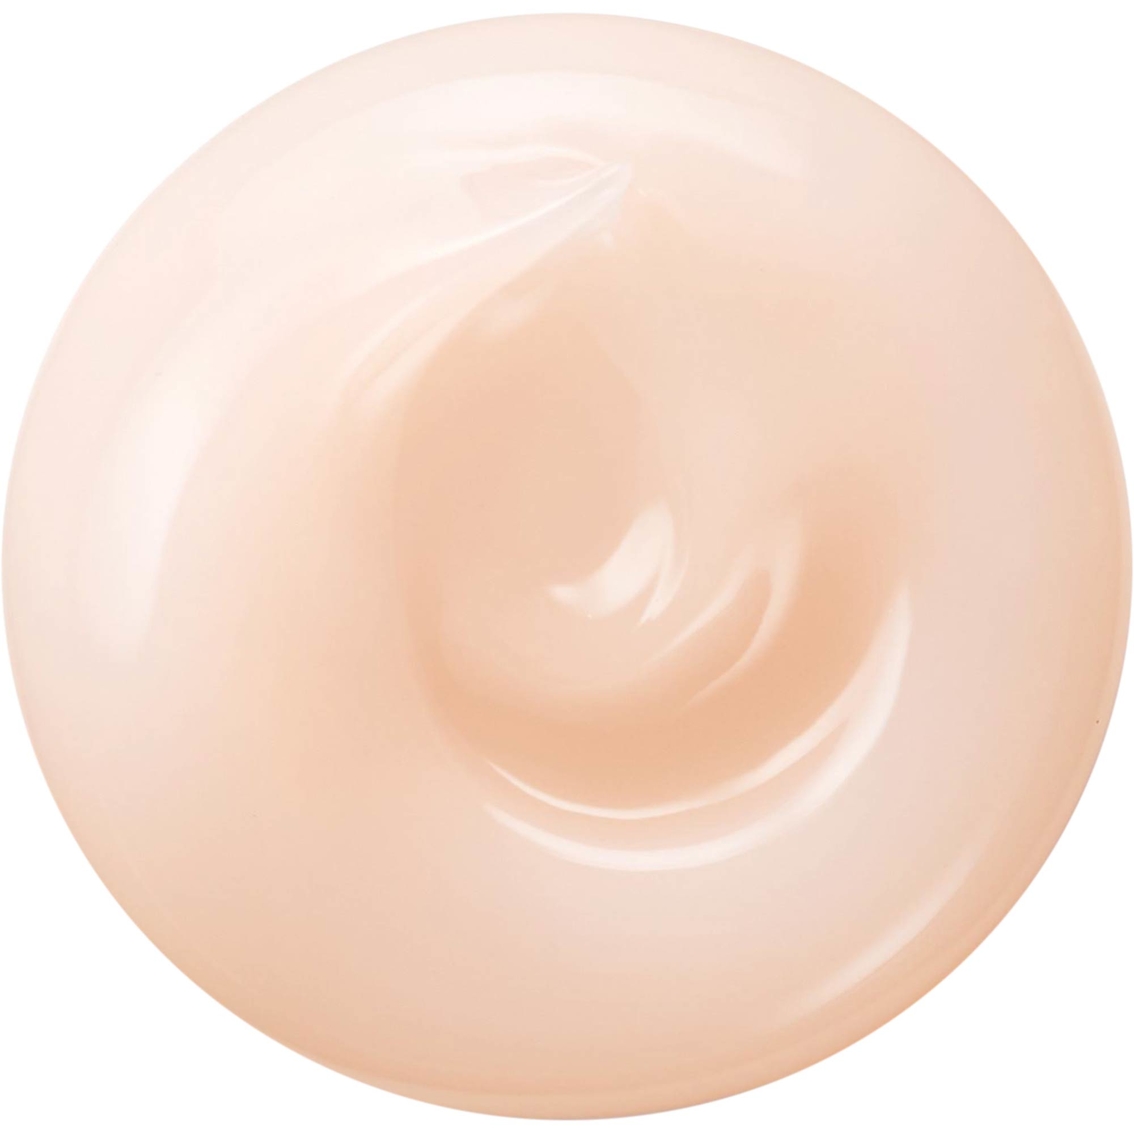 Shiseido White Lucent Overnight Cream & Mask - Image 3 of 3